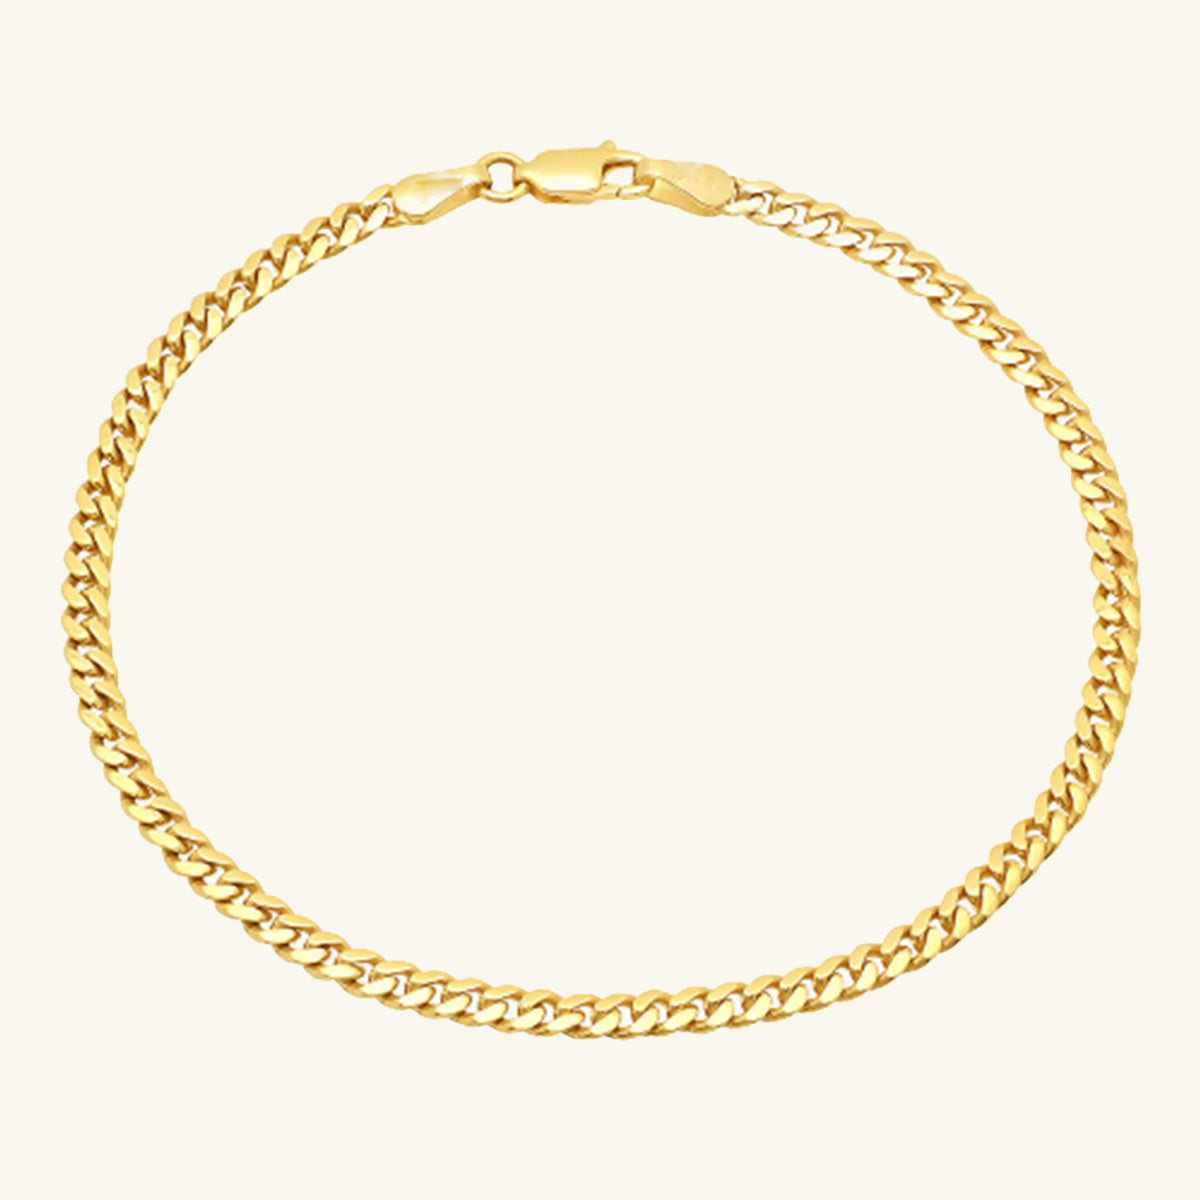 Cuban Chain Bracelet - Wrenlee